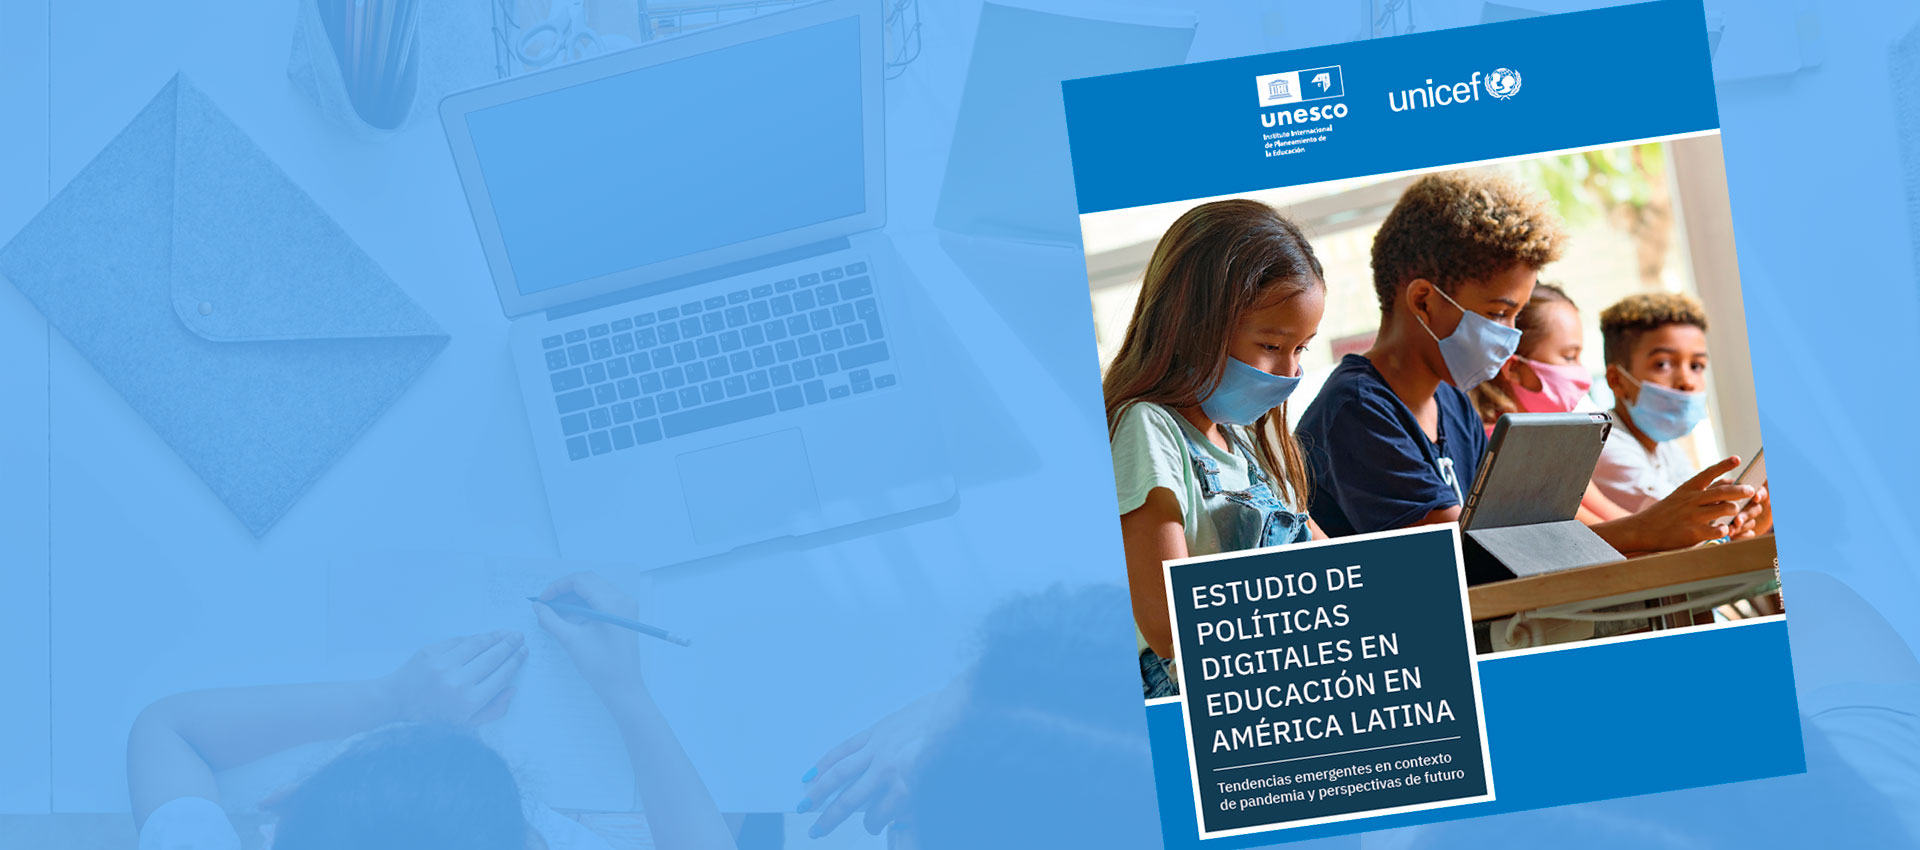 Estudio de Políticas Digitales en Educación en América Latina